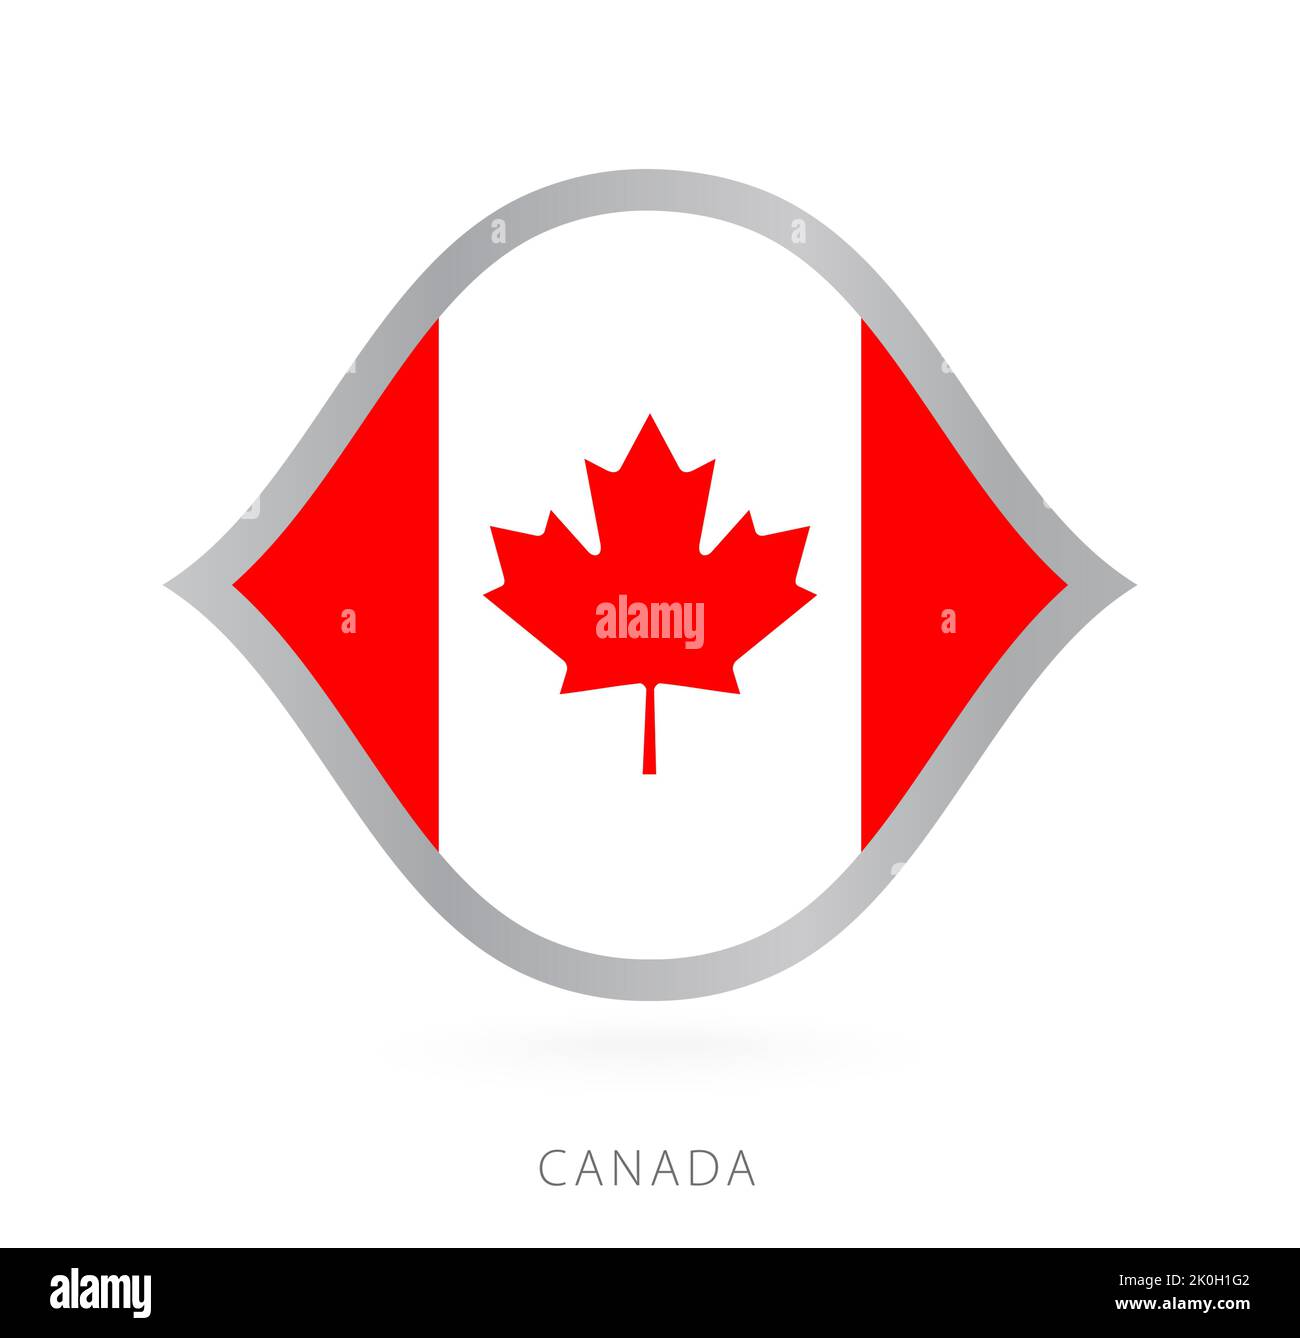 Drapeau de l'équipe nationale du Canada en style pour les compétitions internationales de basket-ball. Signe vectoriel. Illustration de Vecteur